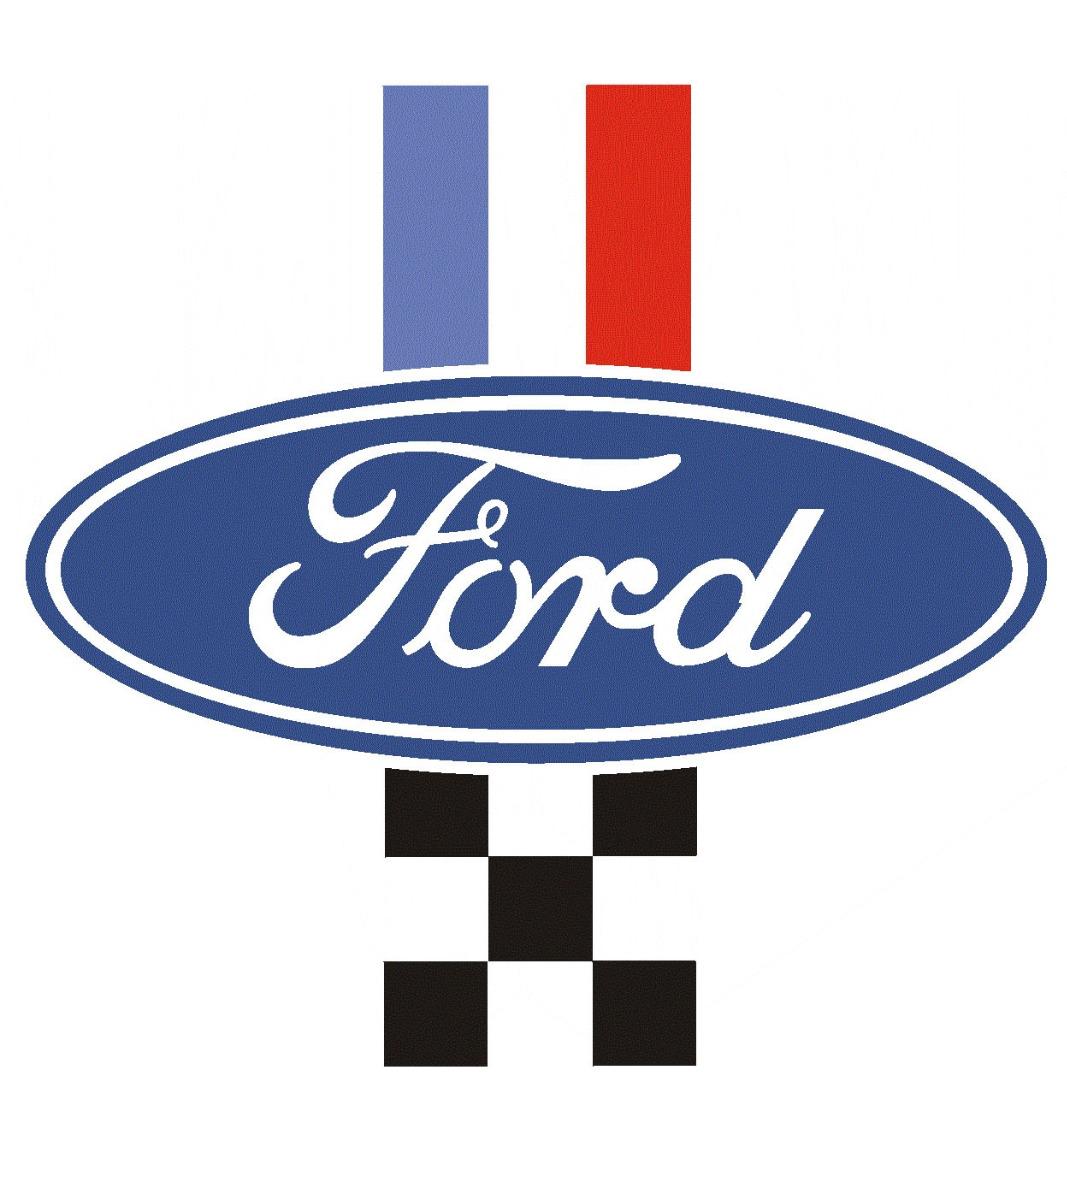 Garage Ford dans le Rhône